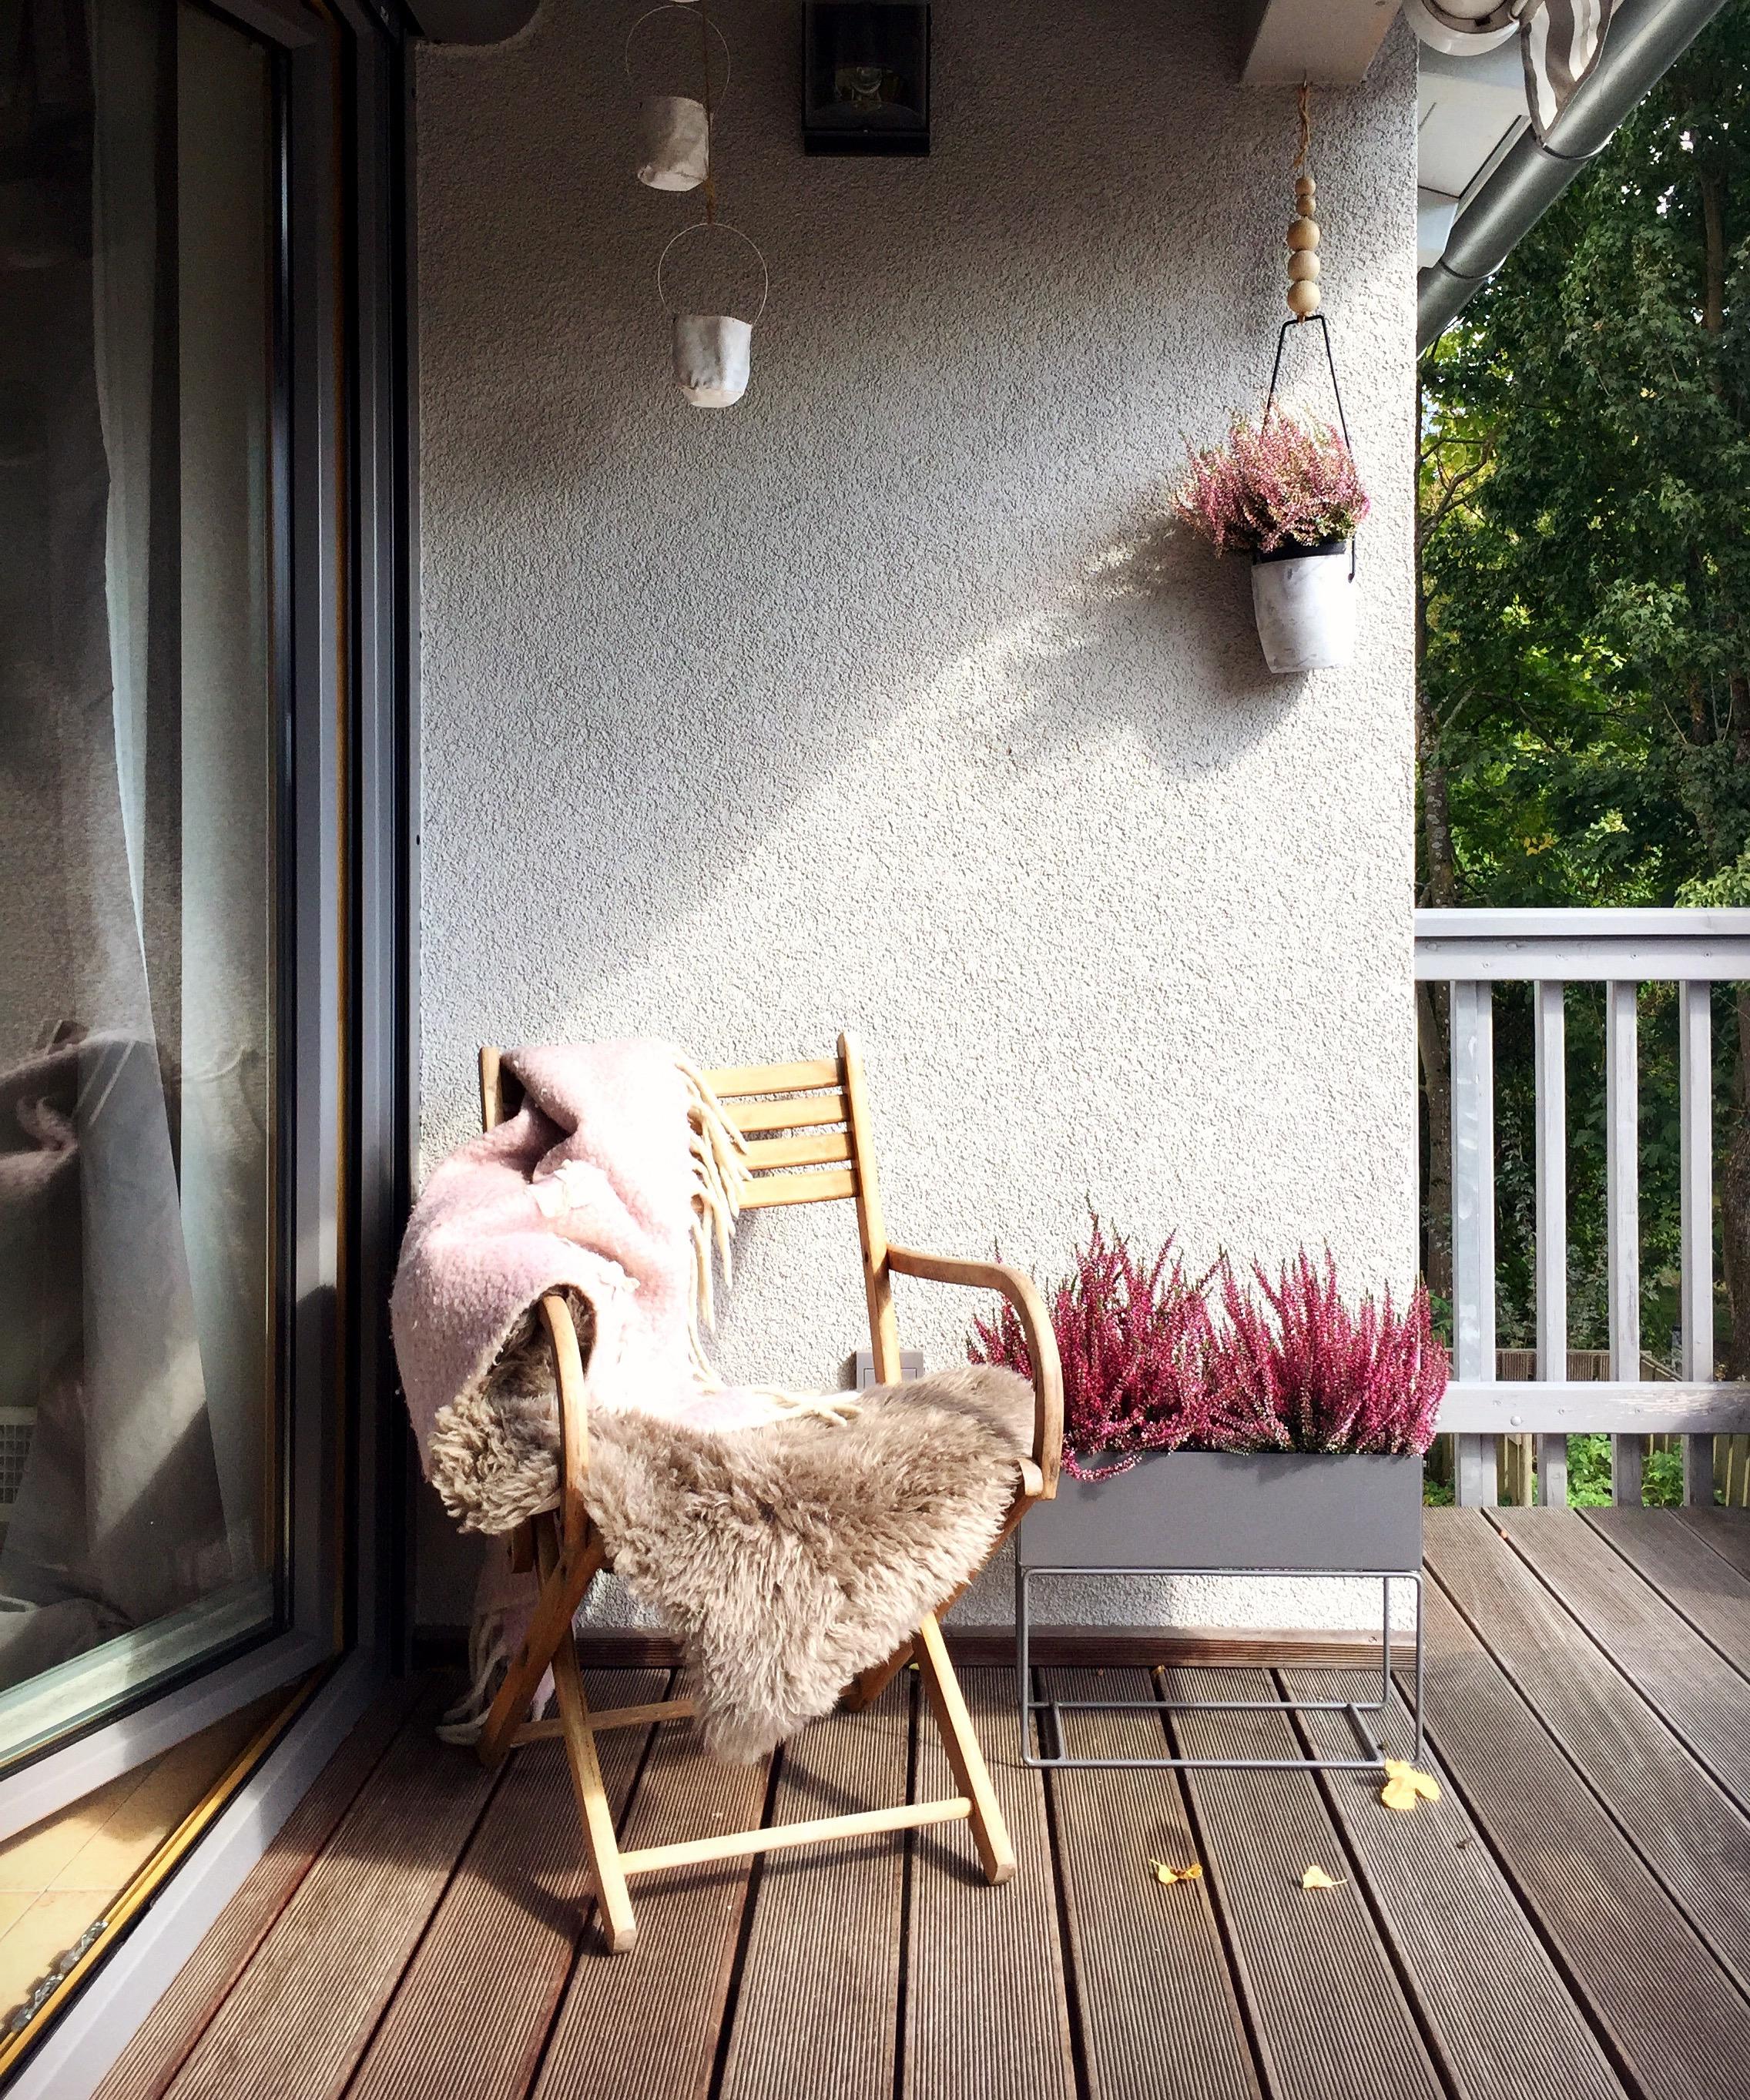 SunnySunday
#herbststimmung auf dem #balkon
#pflanzen #deko #herbst #sonnenschein #septembersonne #danishdesign